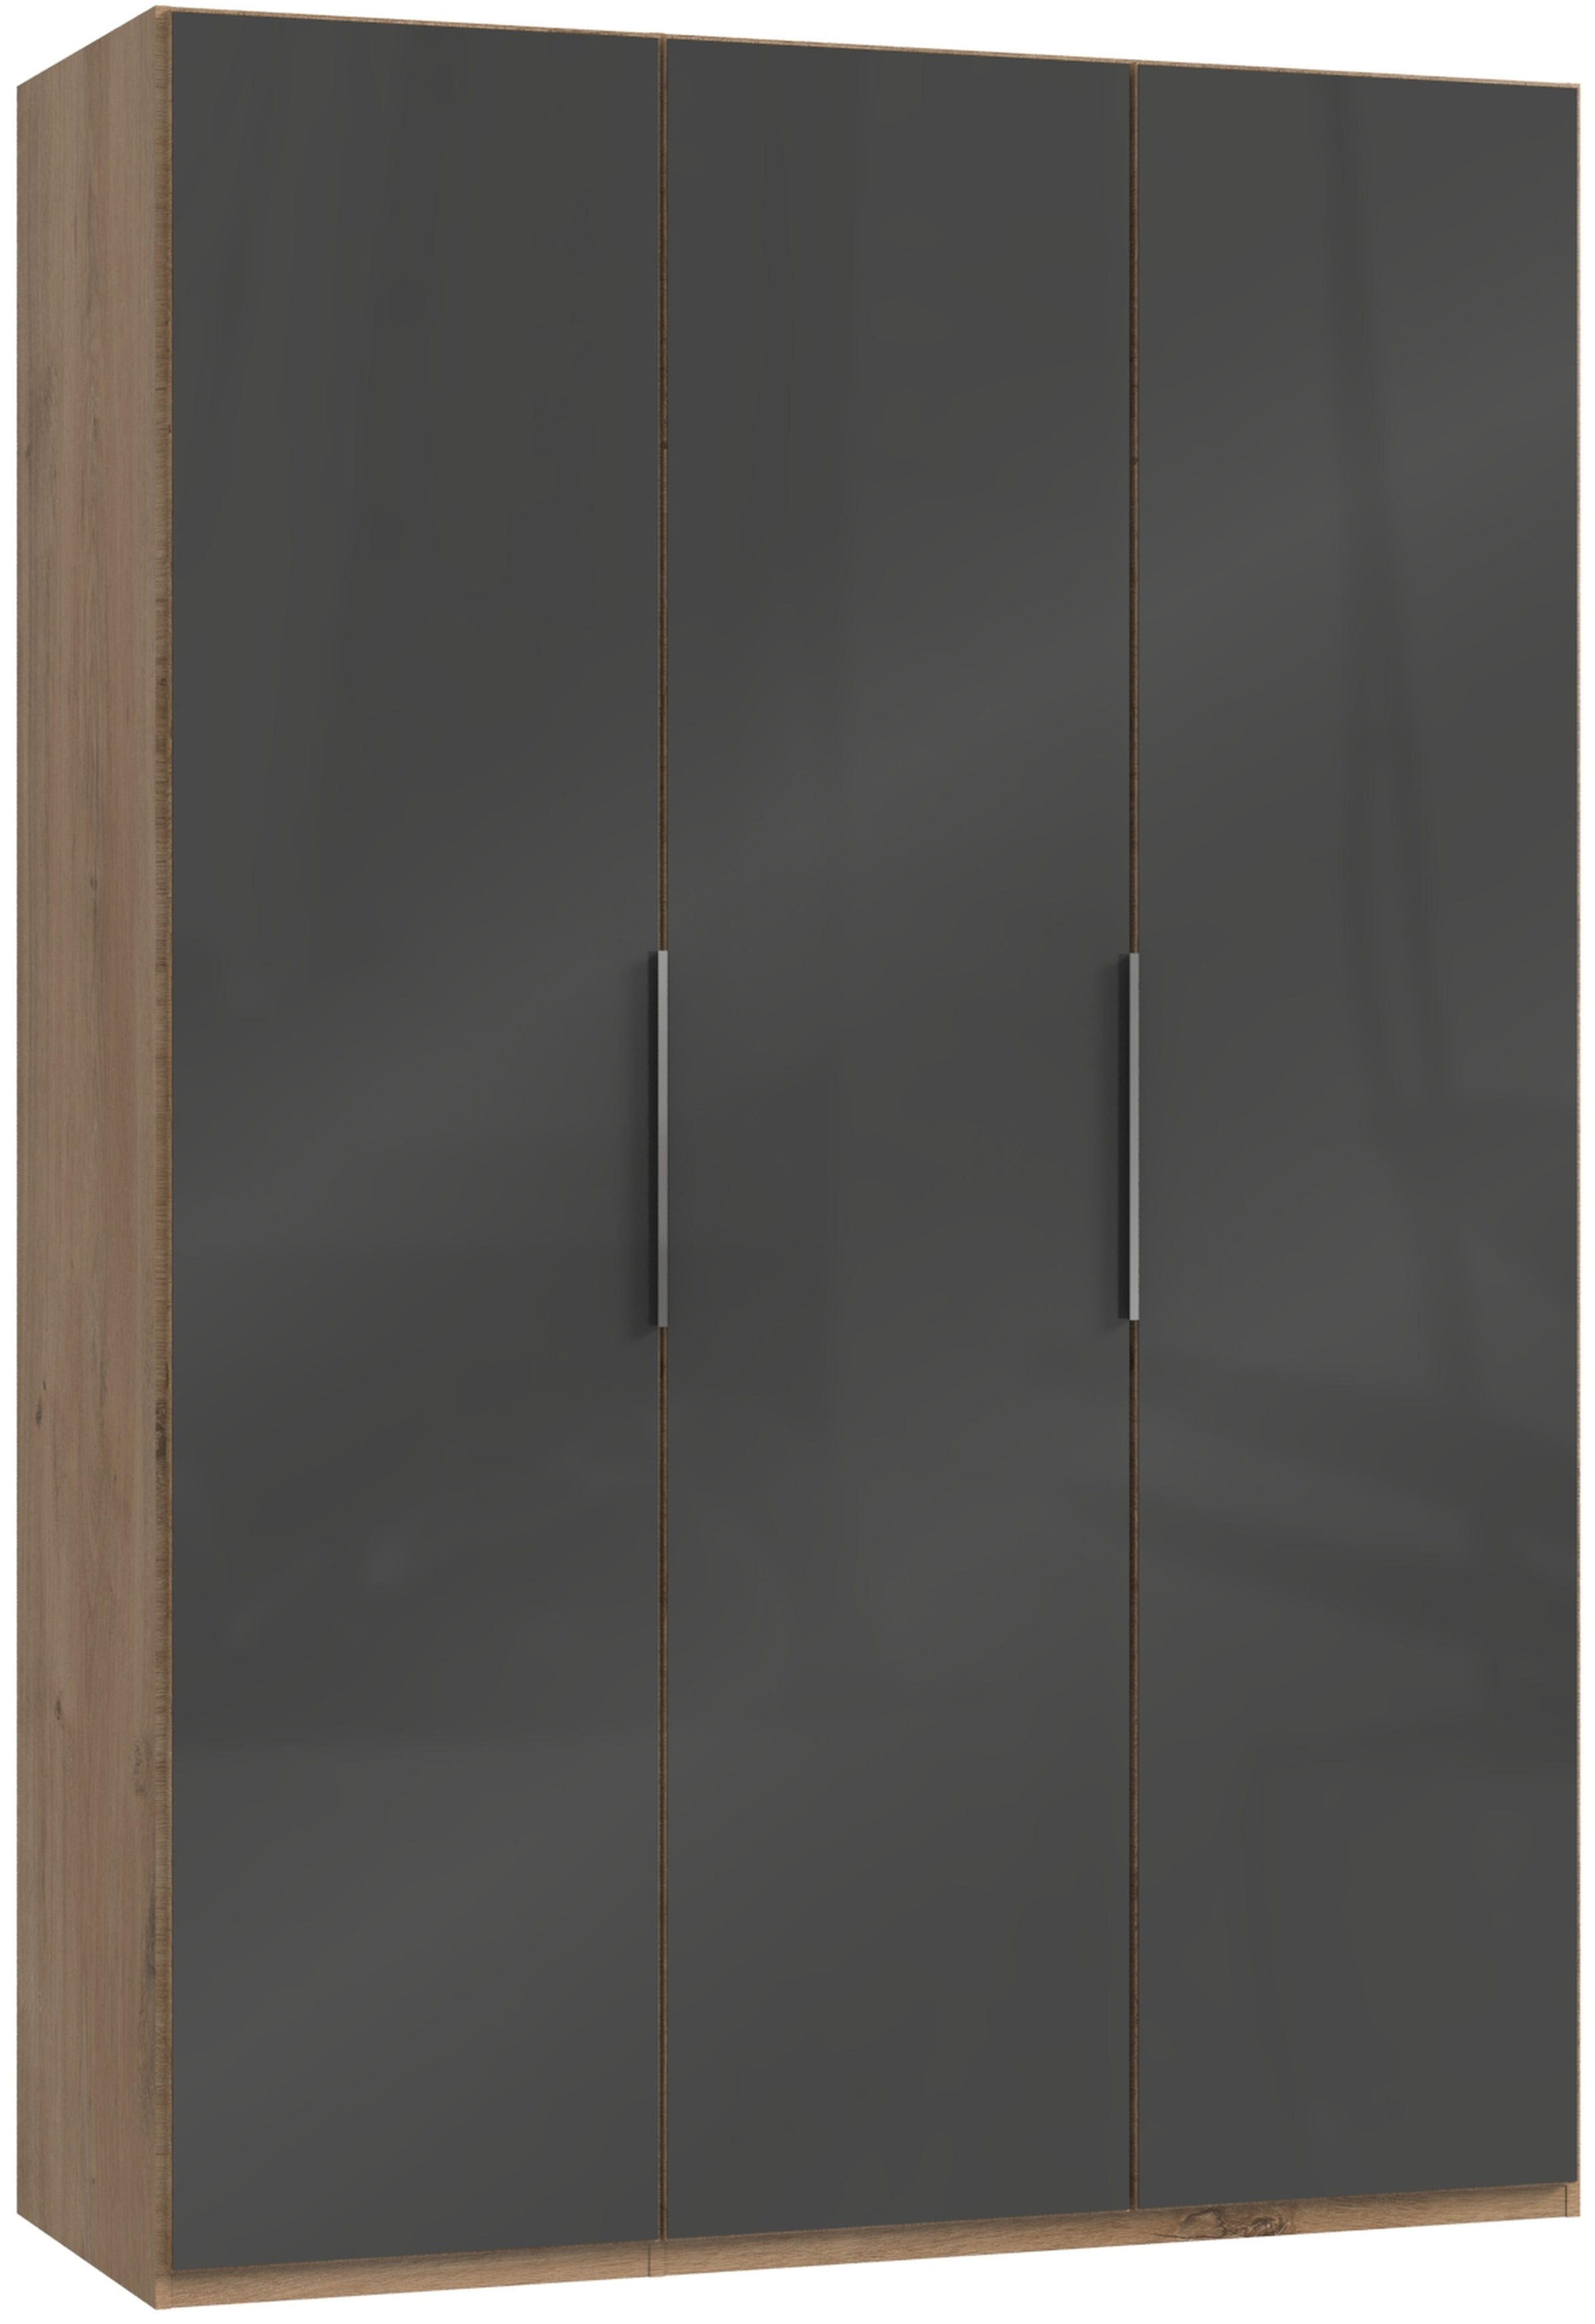 DREHTÜRENSCHRANK 3-türig Grau, Eichefarben  - Chromfarben/Eichefarben, MODERN, Holzwerkstoff/Metall (150/216/58cm) - MID.YOU